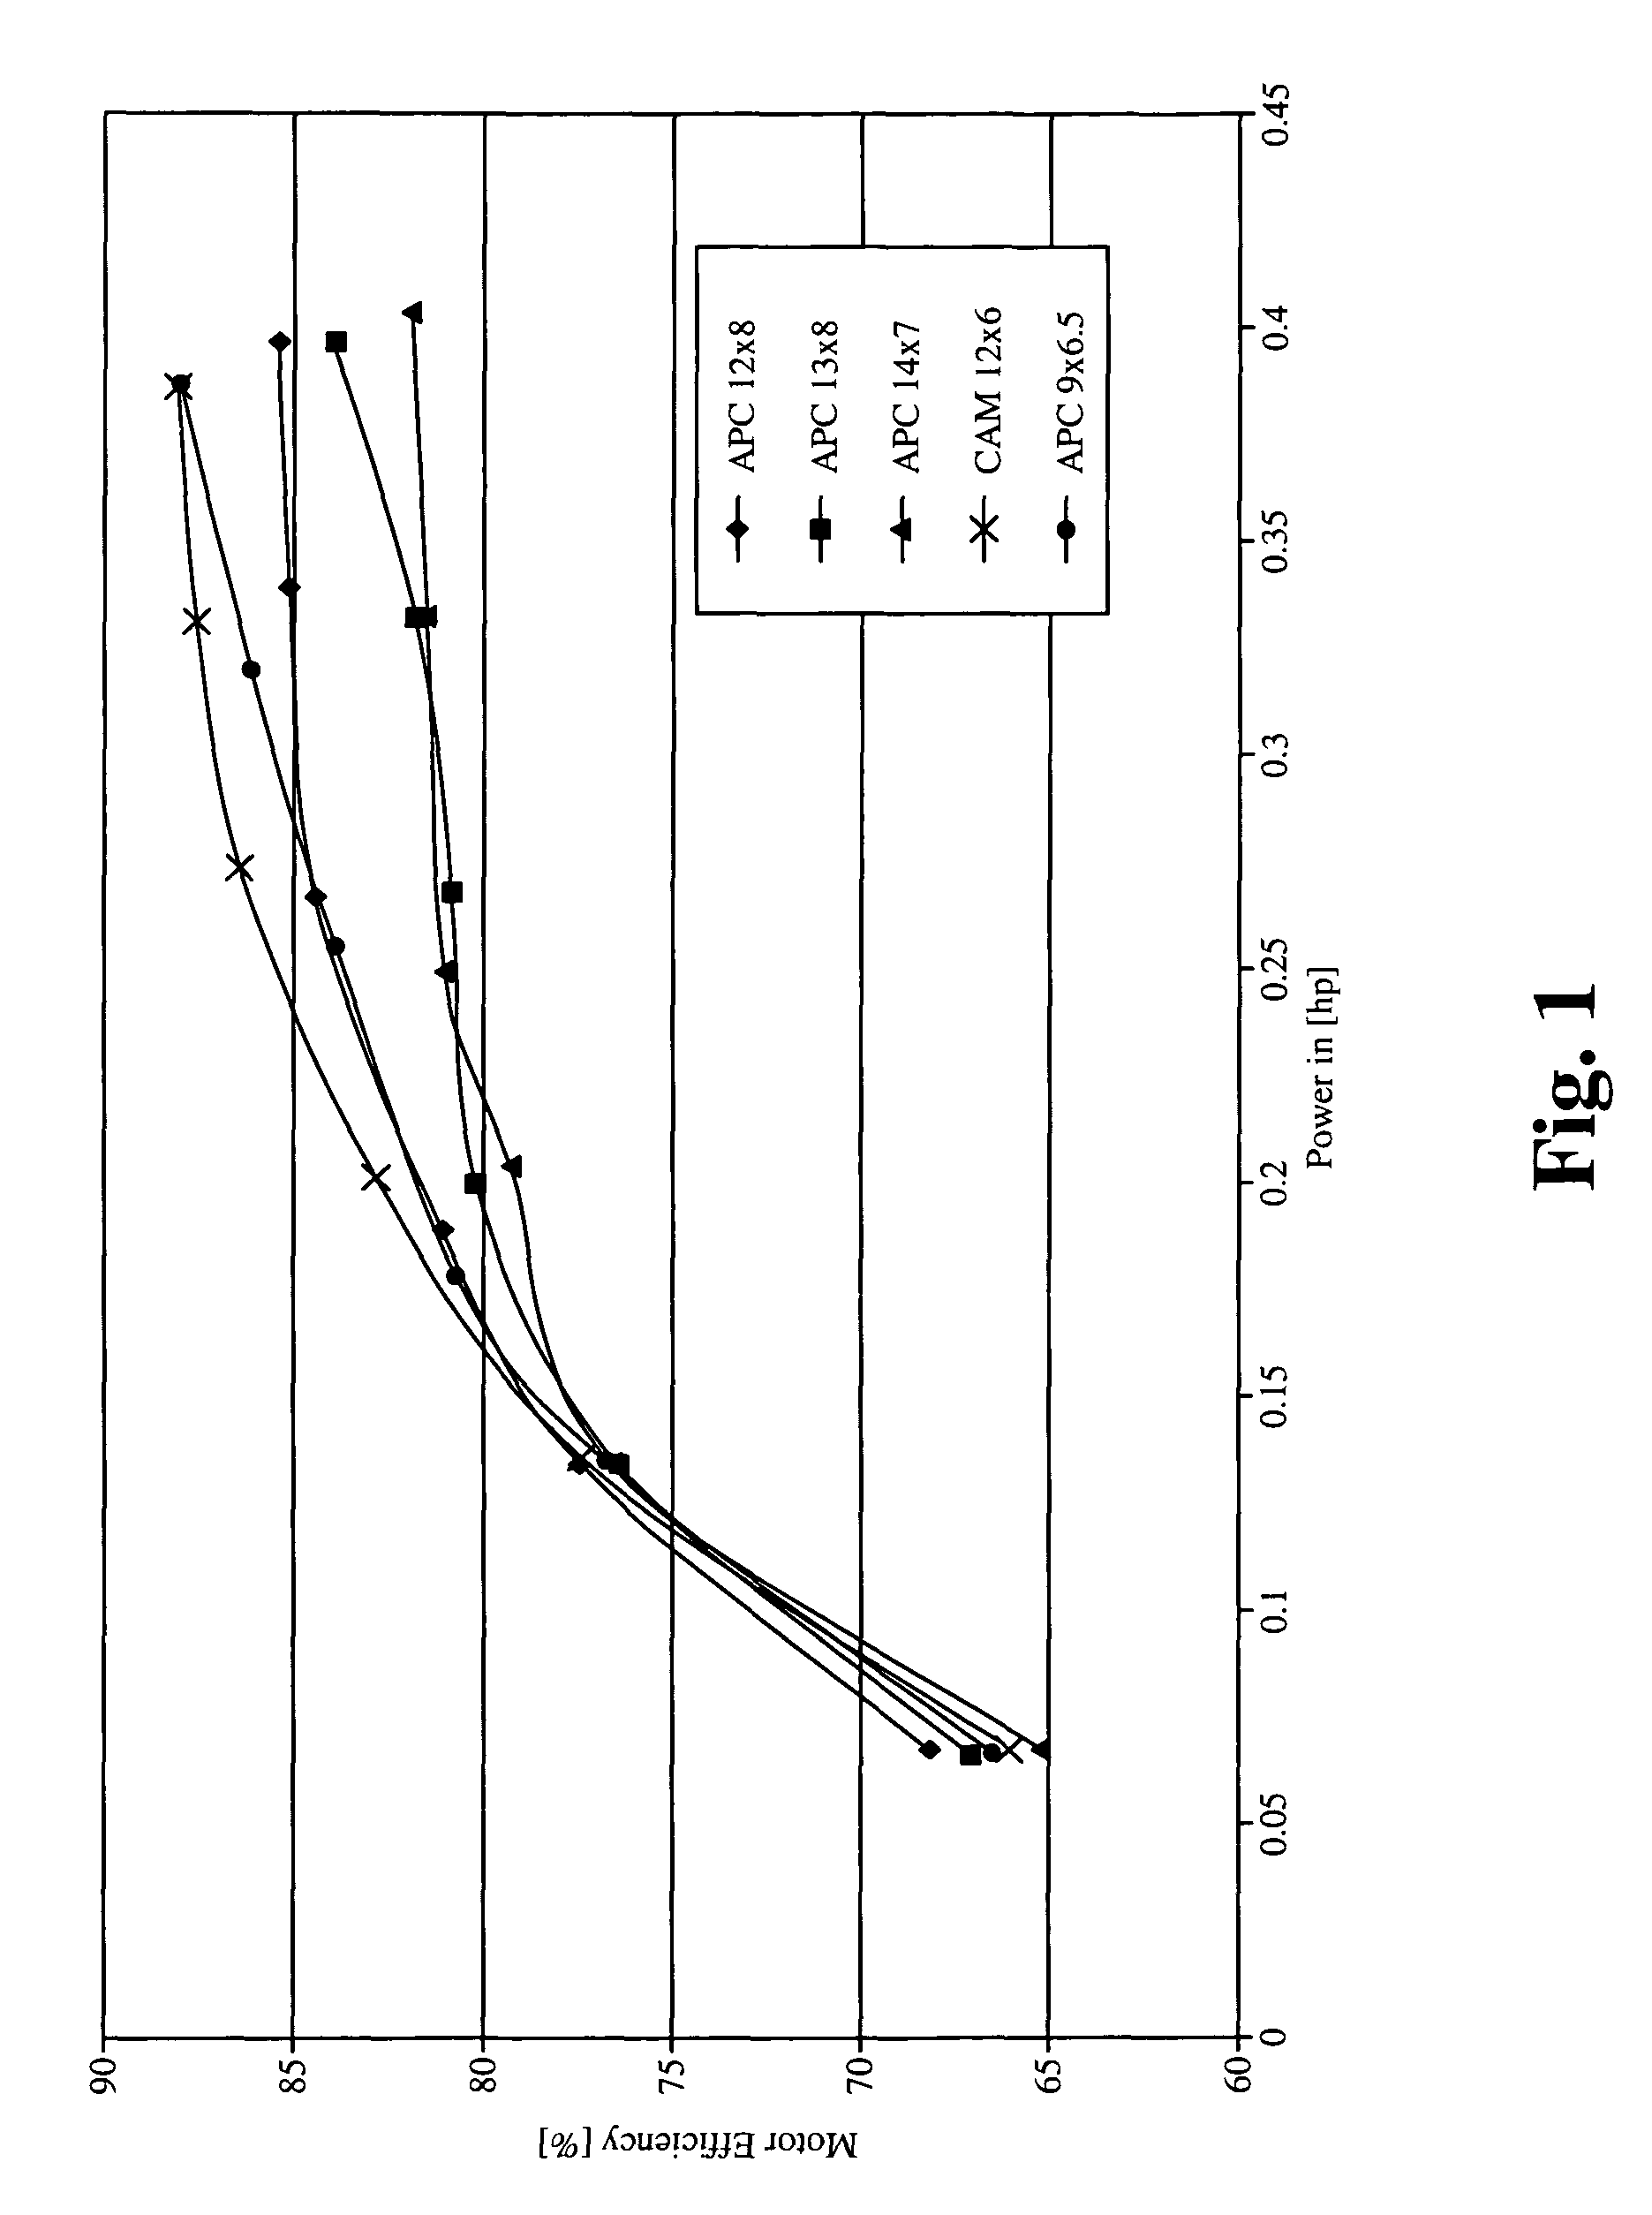 Constant torque propeller mechanism